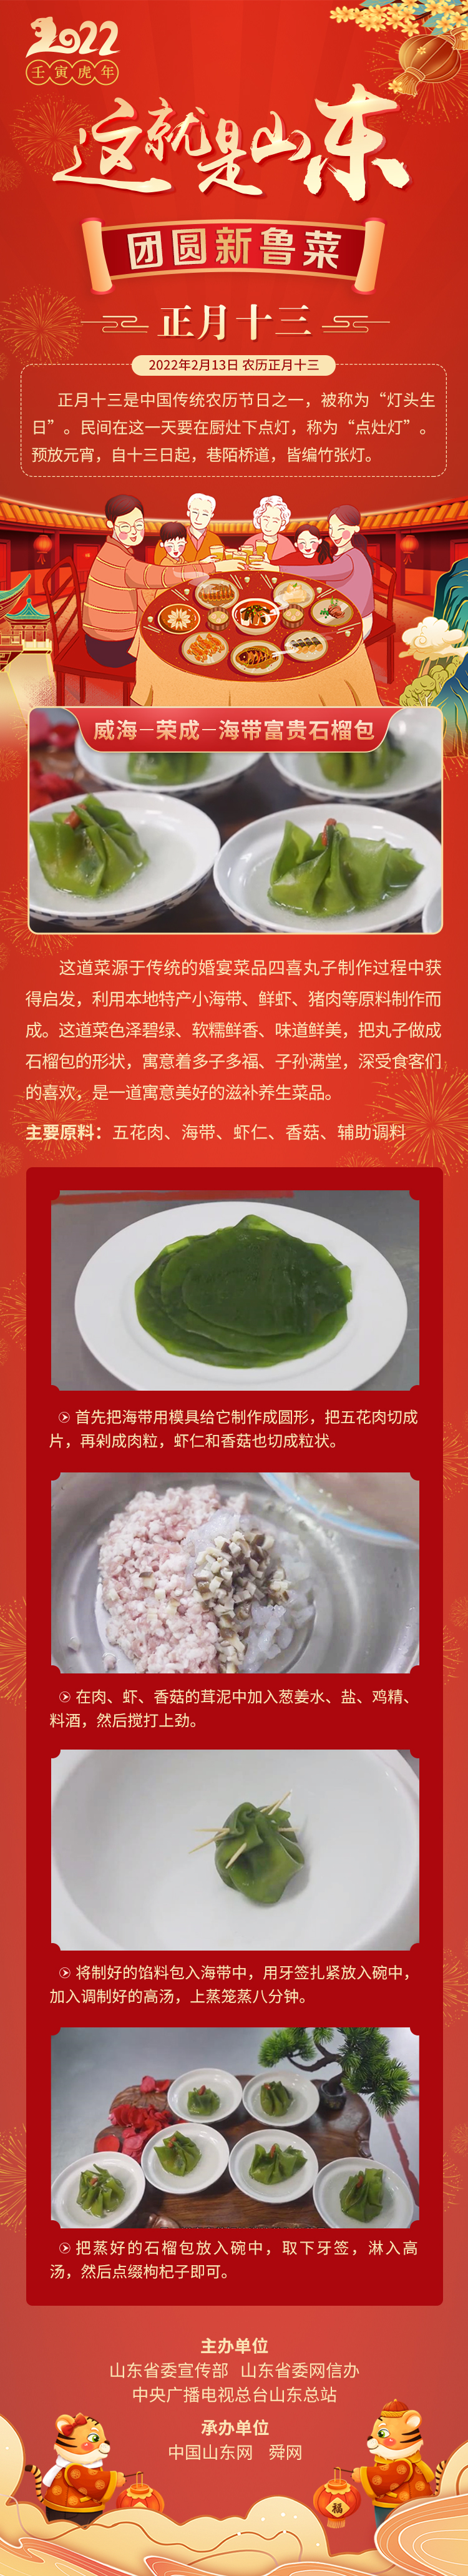 这就是山东·团圆新鲁菜——威海-荣成-海带富贵石榴包